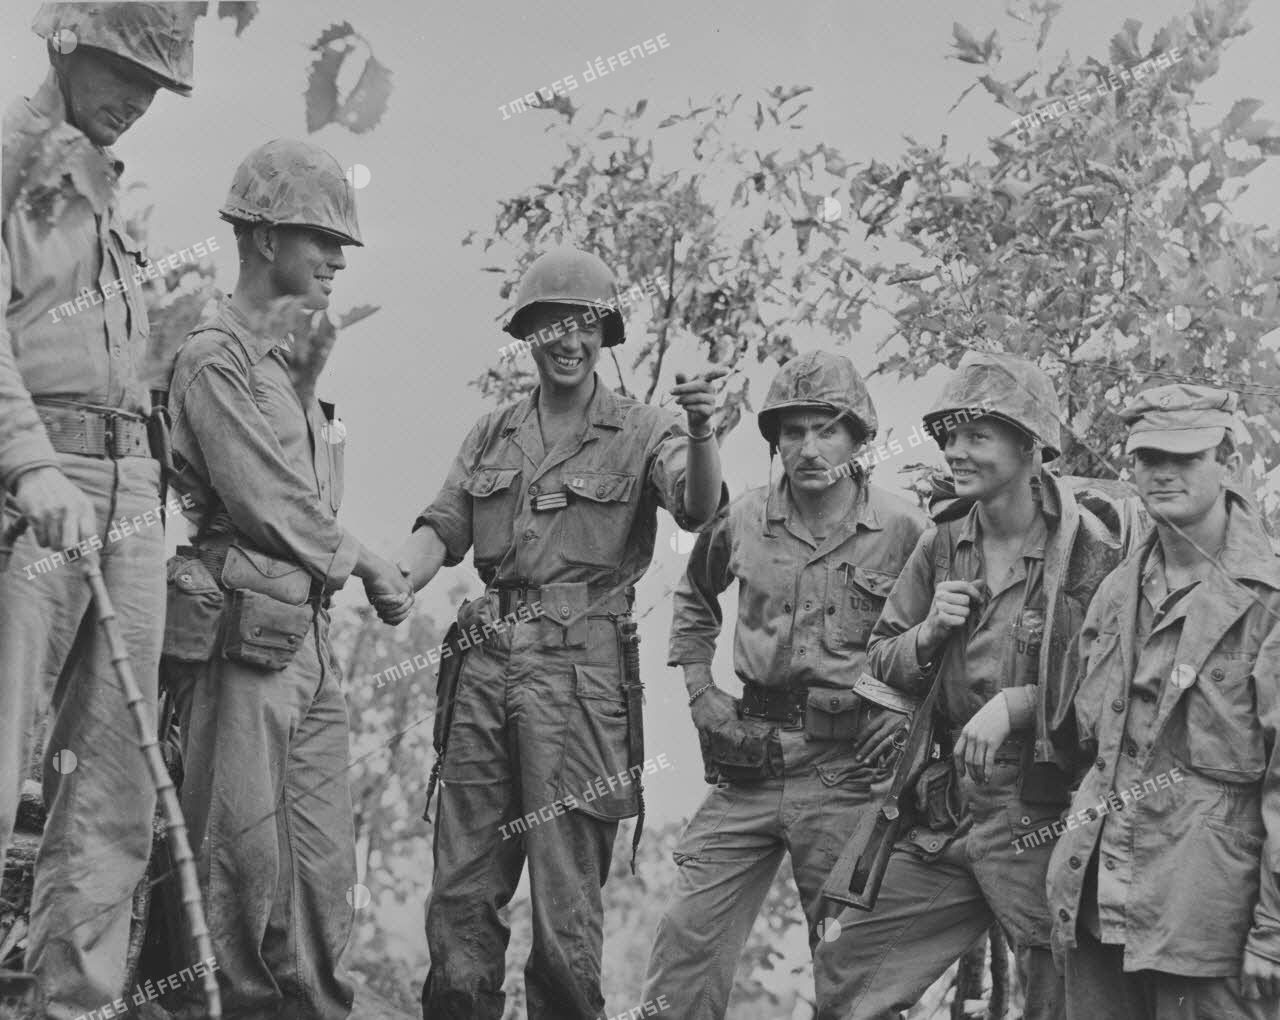 [Punch Bowl. Août 1951. Le bataillon français relève le 2e bataillon du 5e régiment de Marines. Le capitaine de Castries et le capitaine Ray N. Joens échangent une cordiale poignée de main.]